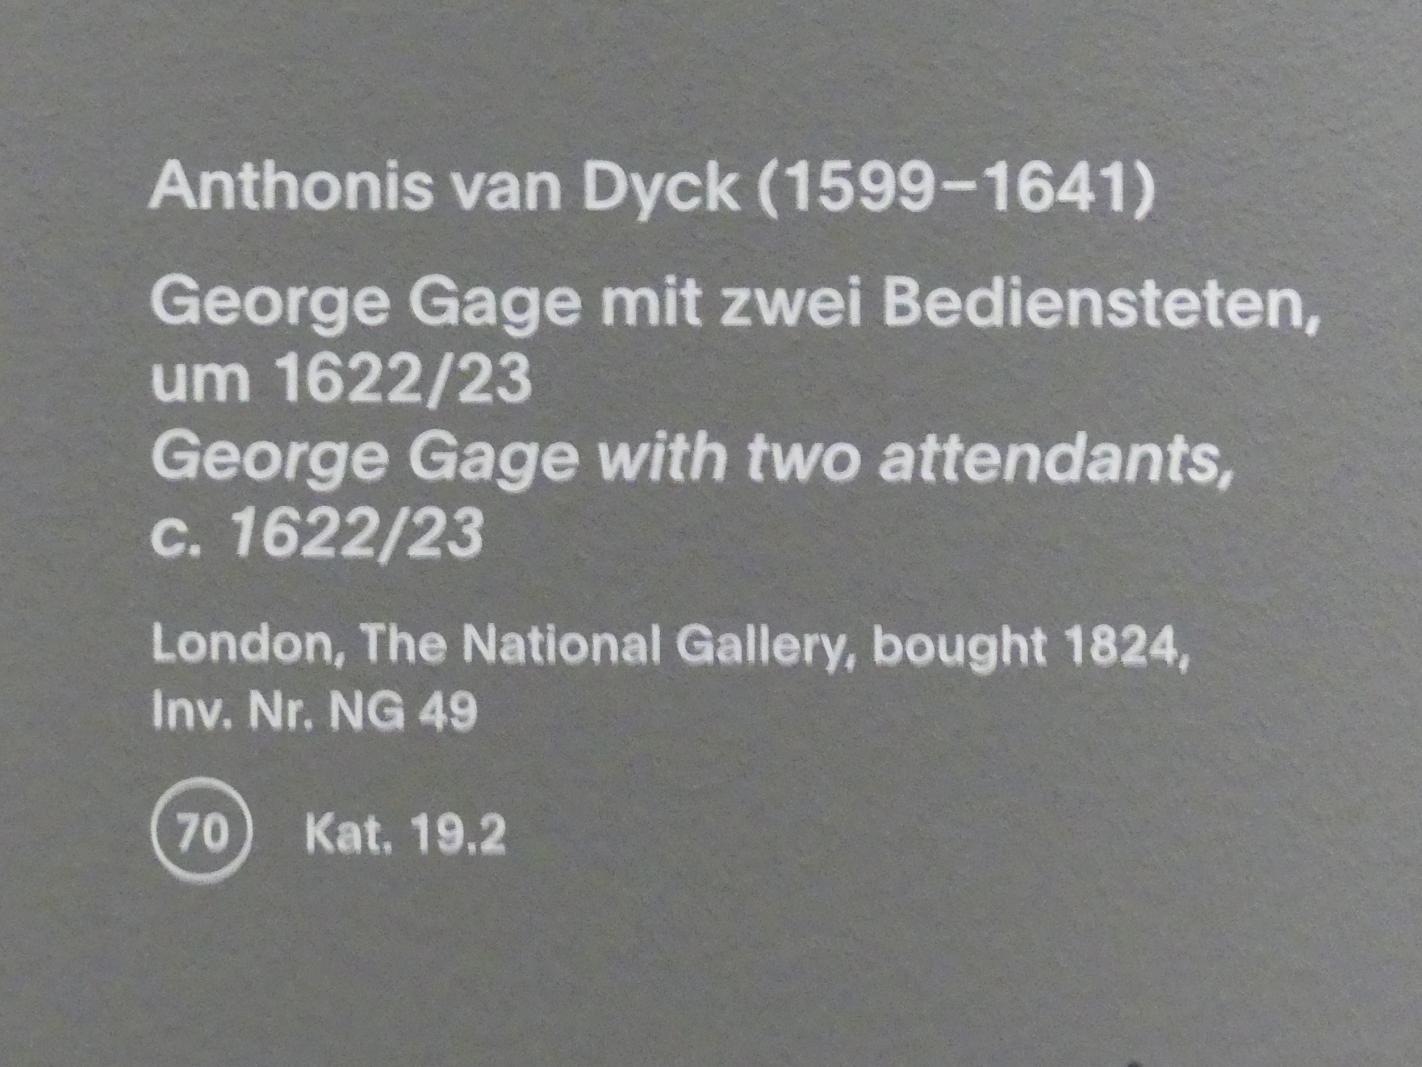 Anthonis (Anton) van Dyck (1614–1641), George Gage mit zwei Bediensteten, München, Alte Pinakothek, Ausstellung "Van Dyck" vom 25.10.2019-02.02.2020, Künstlerbildnisse - 1, um 1622–1623, Bild 2/2